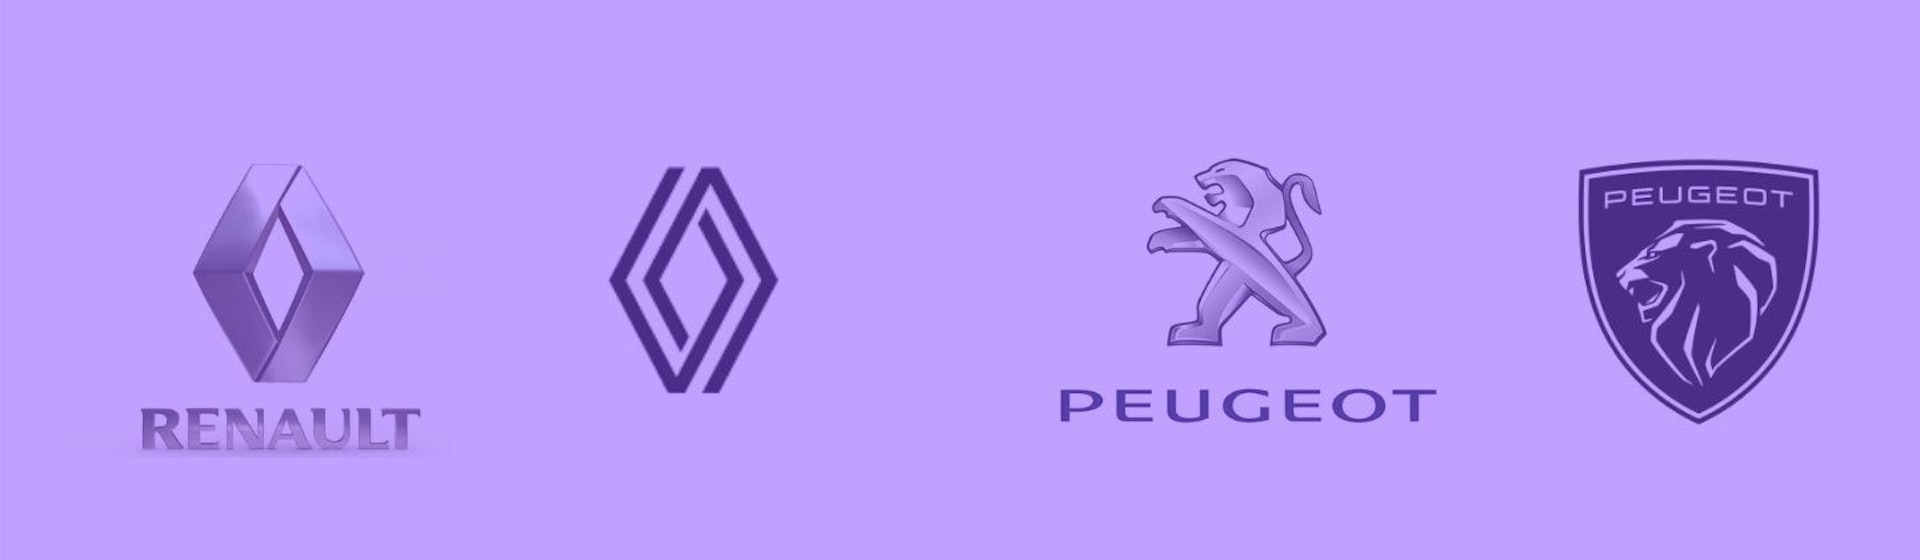 ¿Qué sucedió con los logos de Renault y Peugeot?